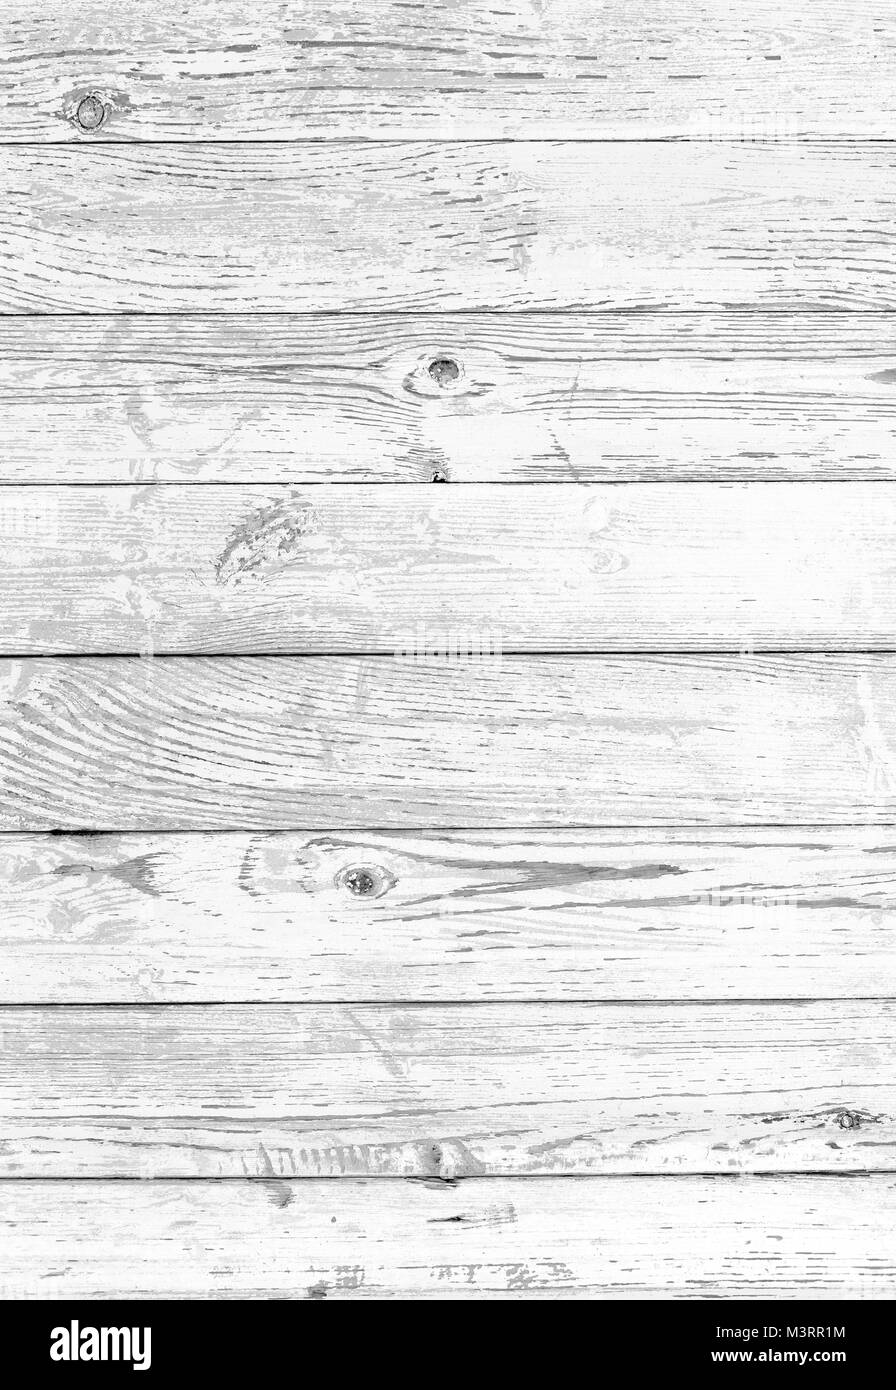 En blanco y negro de fondo de madera Foto de stock